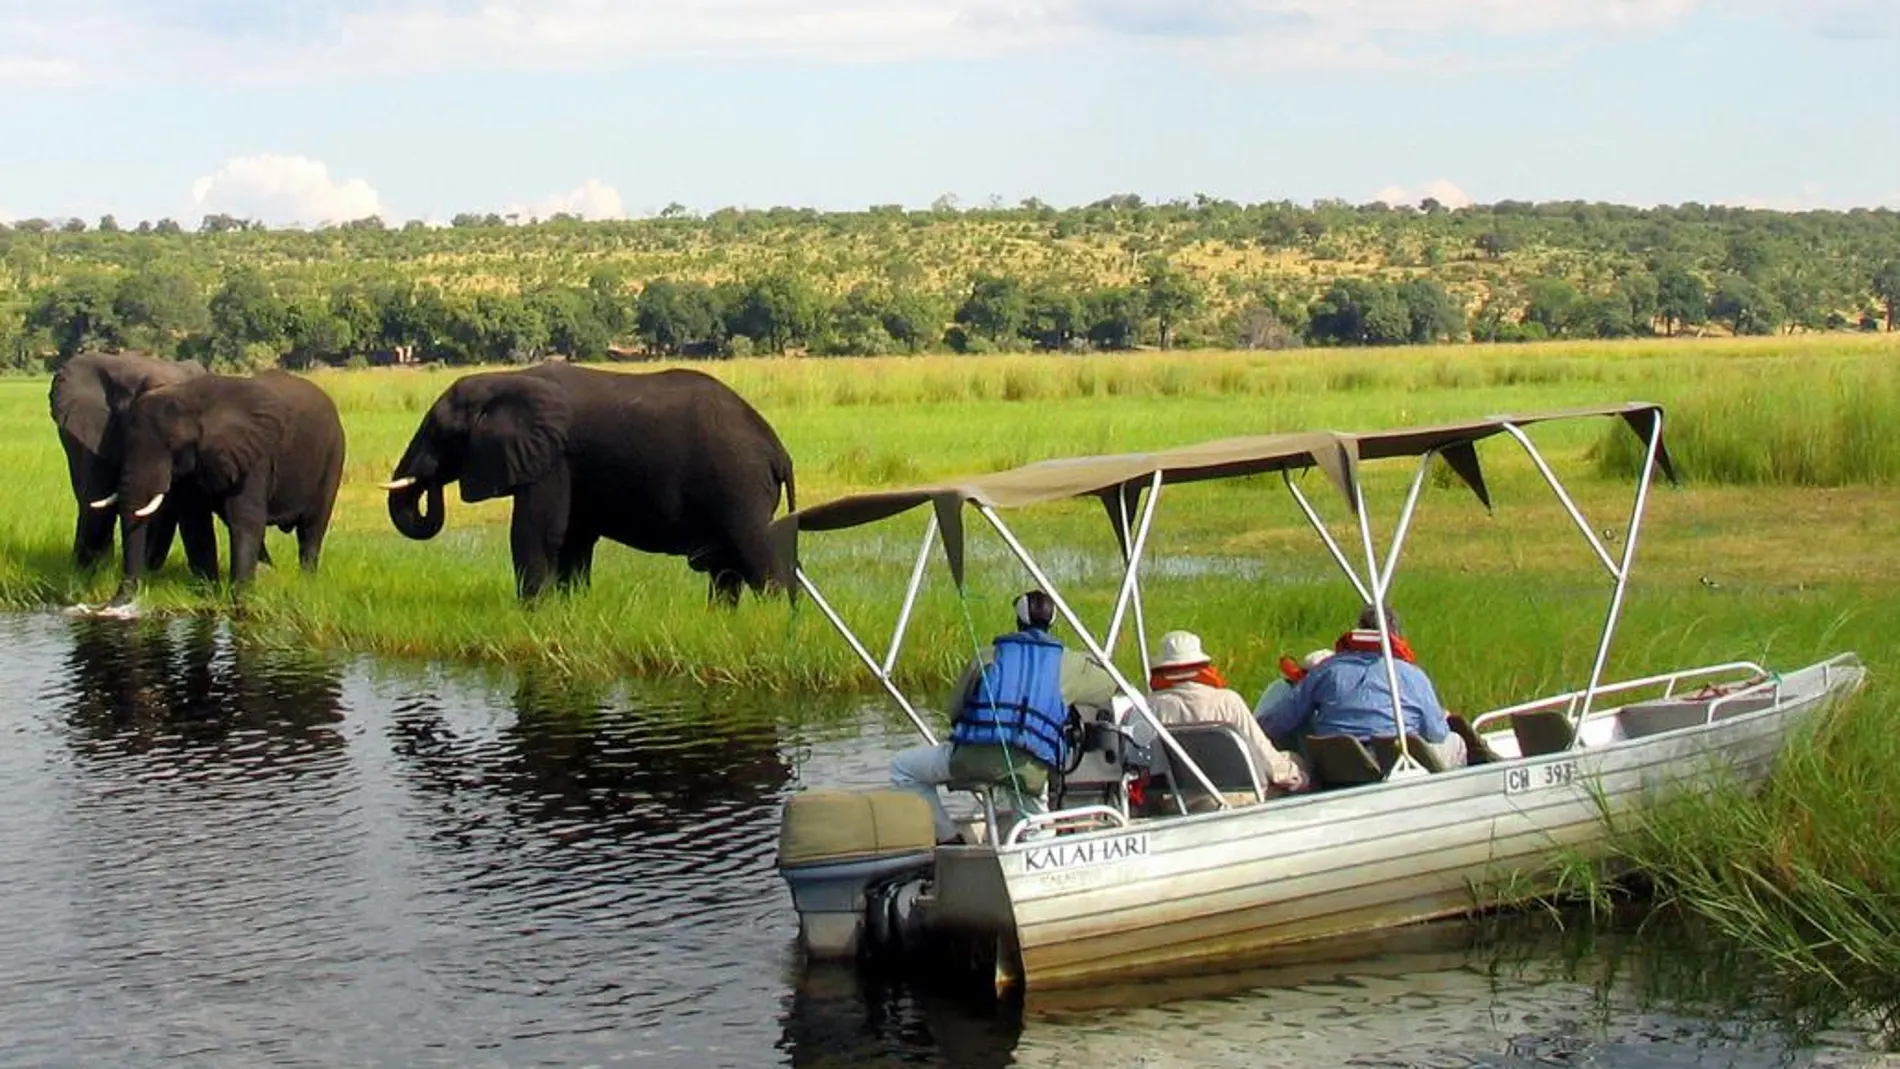 Turistas extranjeros observan elefantes en el río Chobe, en una imagen de archivo